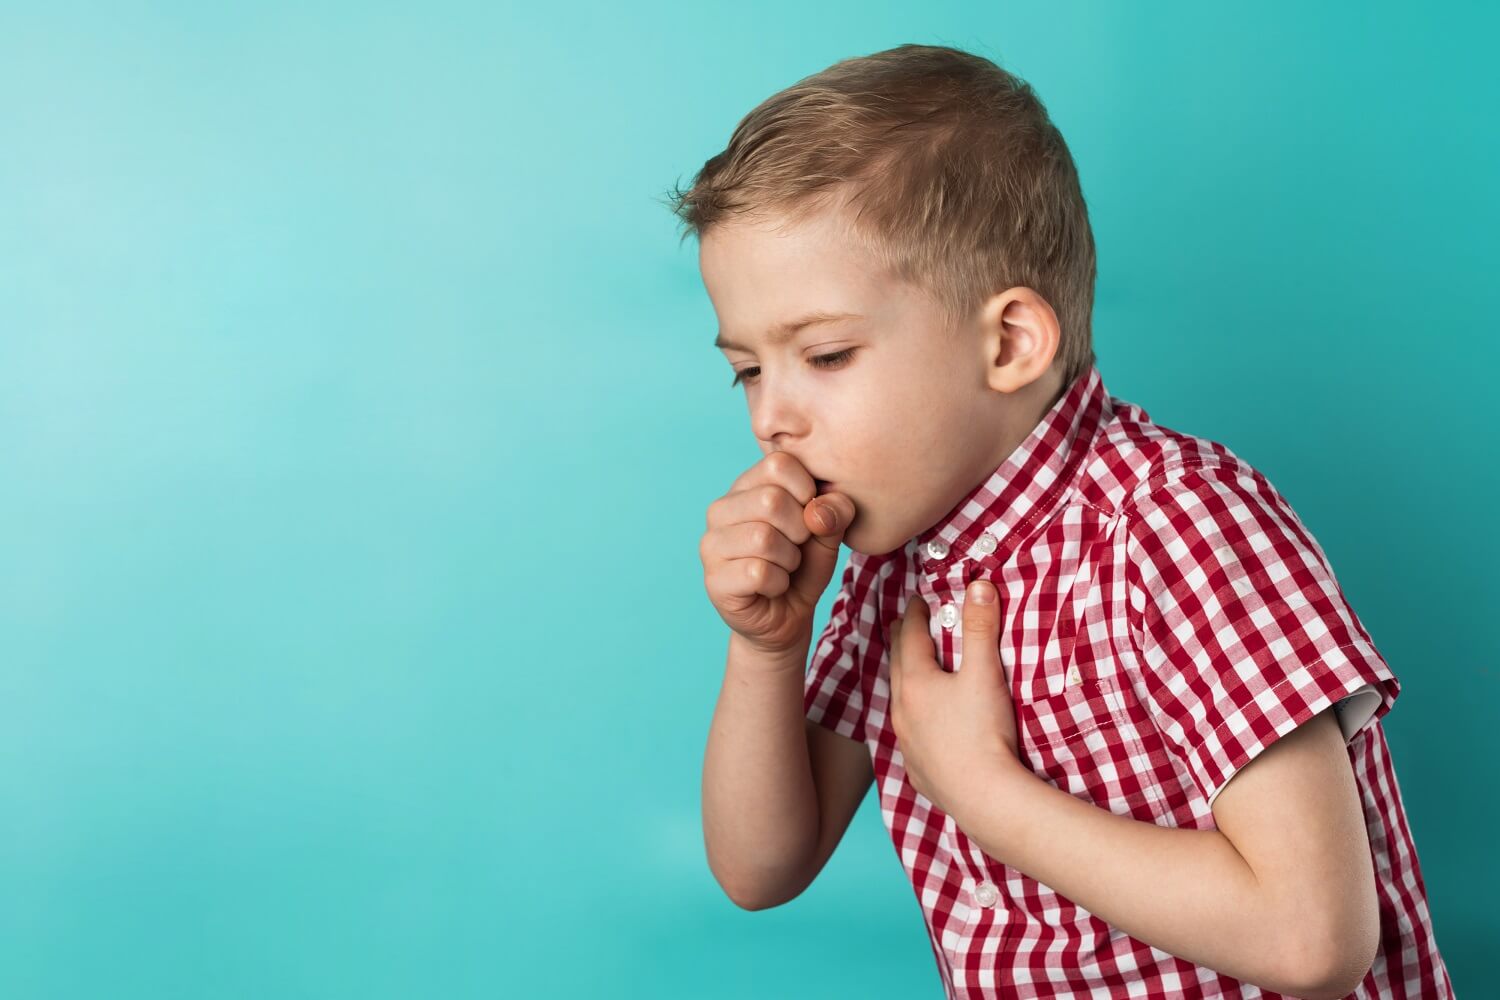 Как быстро вылечить кашель в домашних условиях?